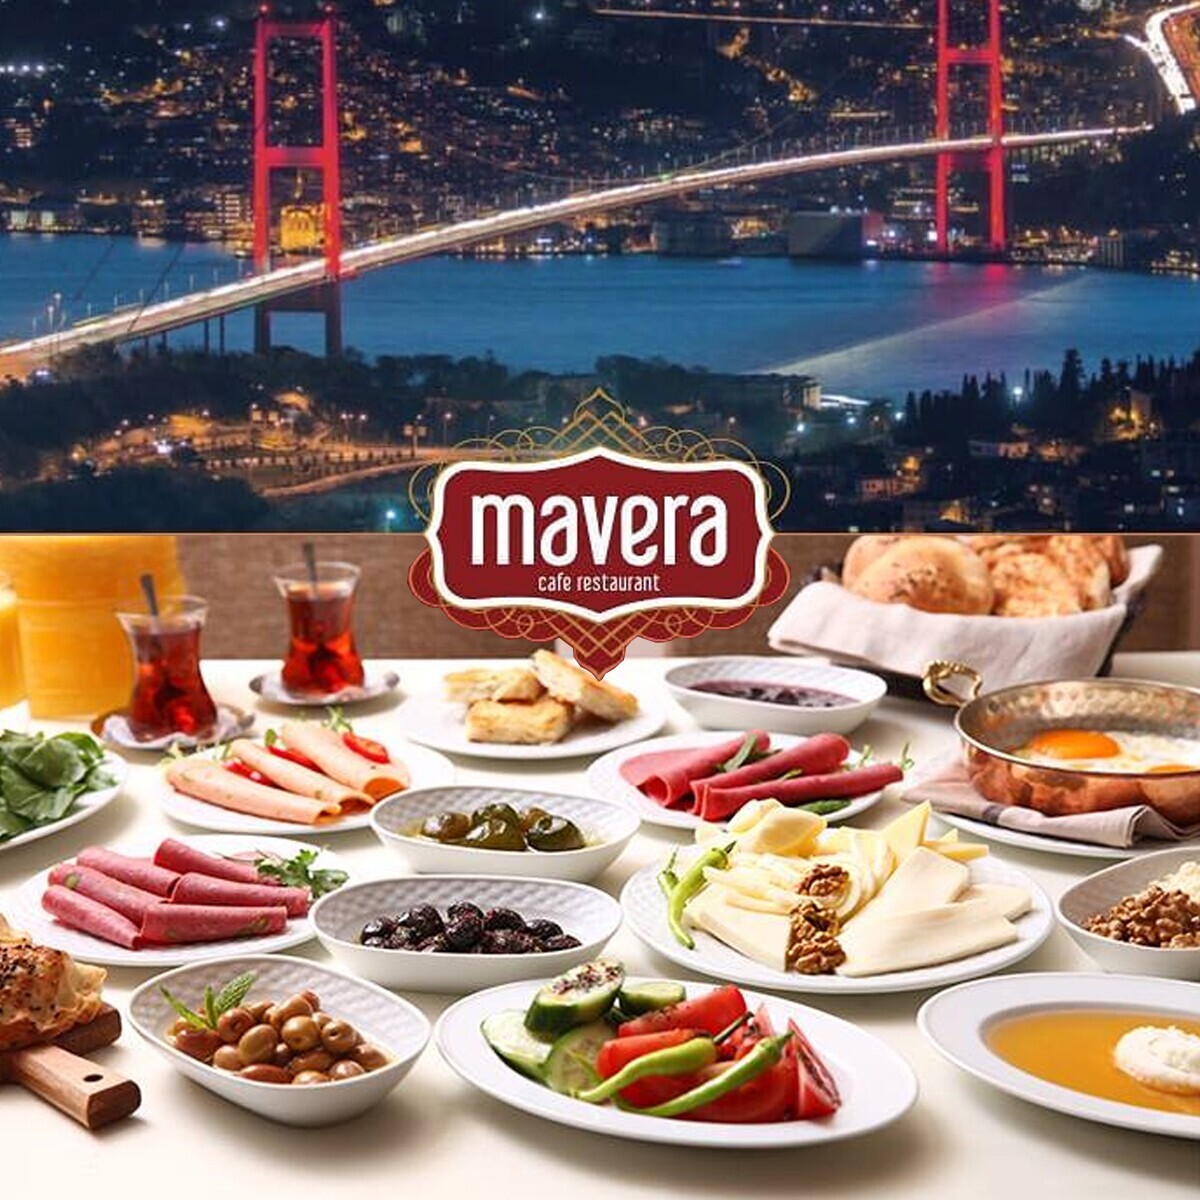 Çamlıca Mavera Cafe Restaurant Boğaz Manzaralı Kahvaltı Seçenekleri